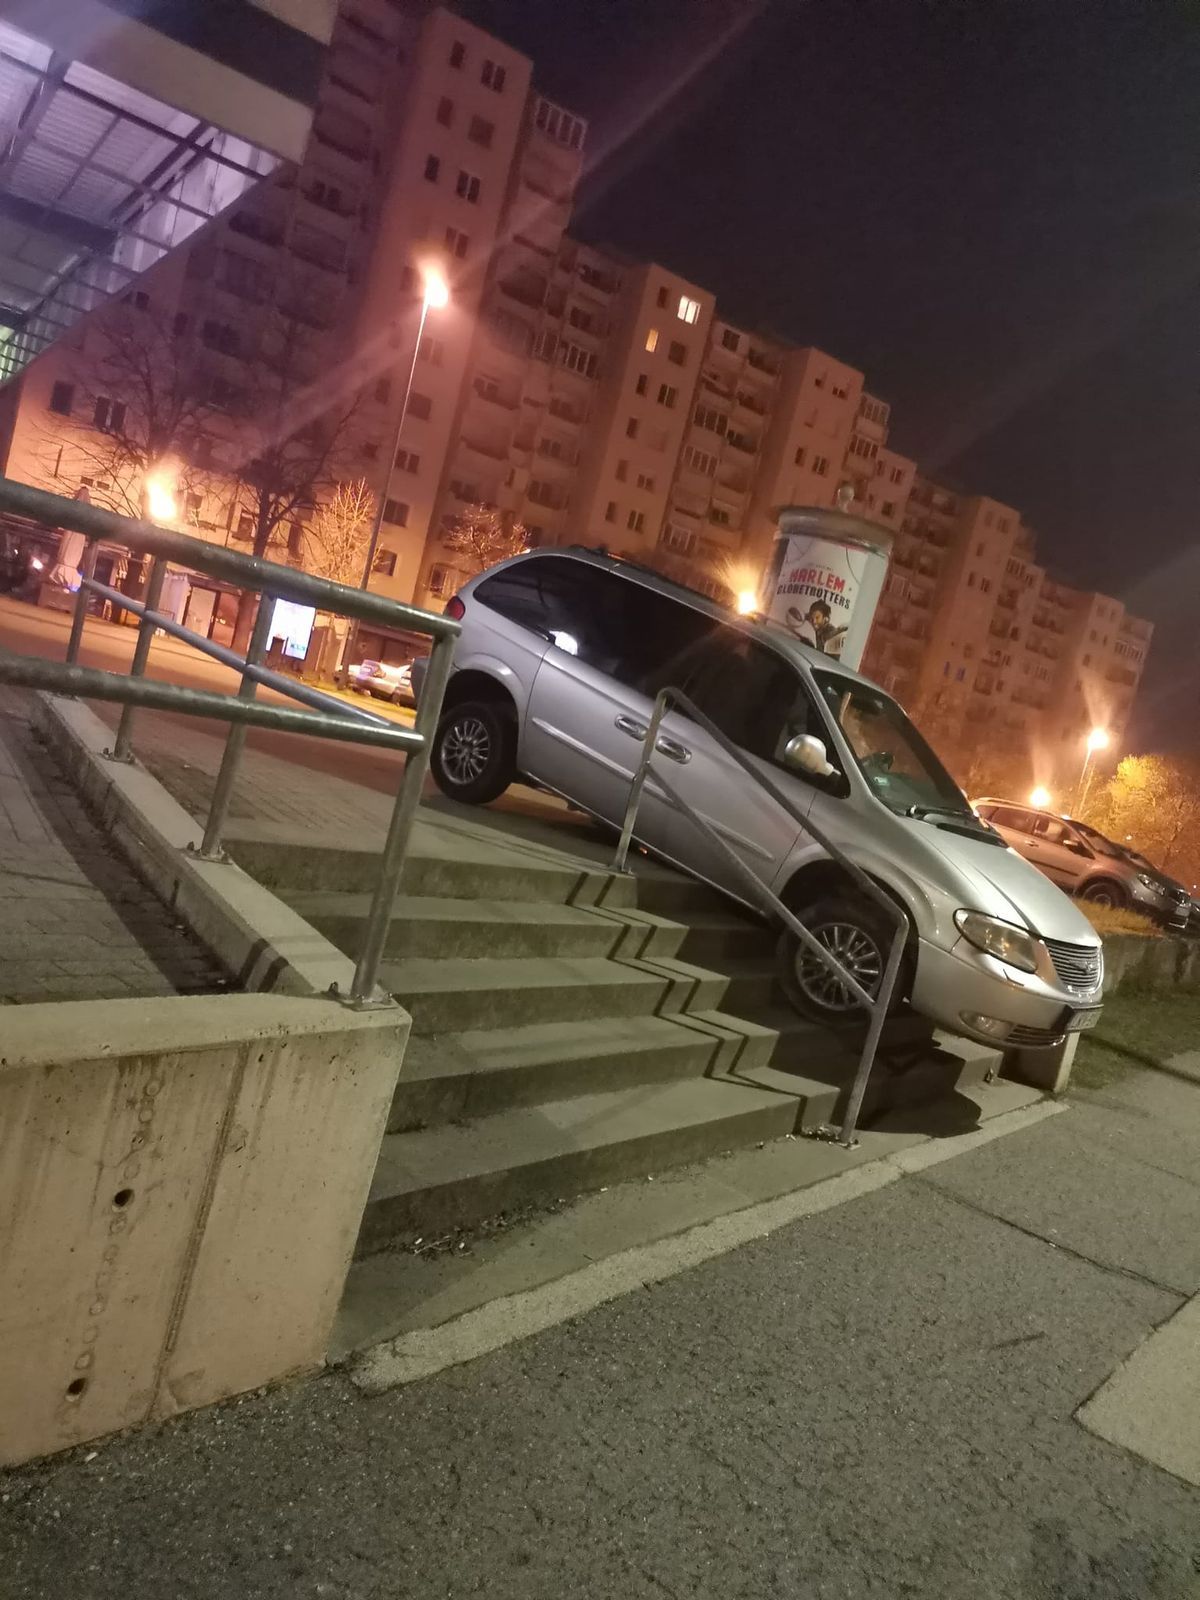 Érdekes helyet választott autójának a tulajdonos
Fotó: Ezt láttam Veszprémben / Forrás: Facebook